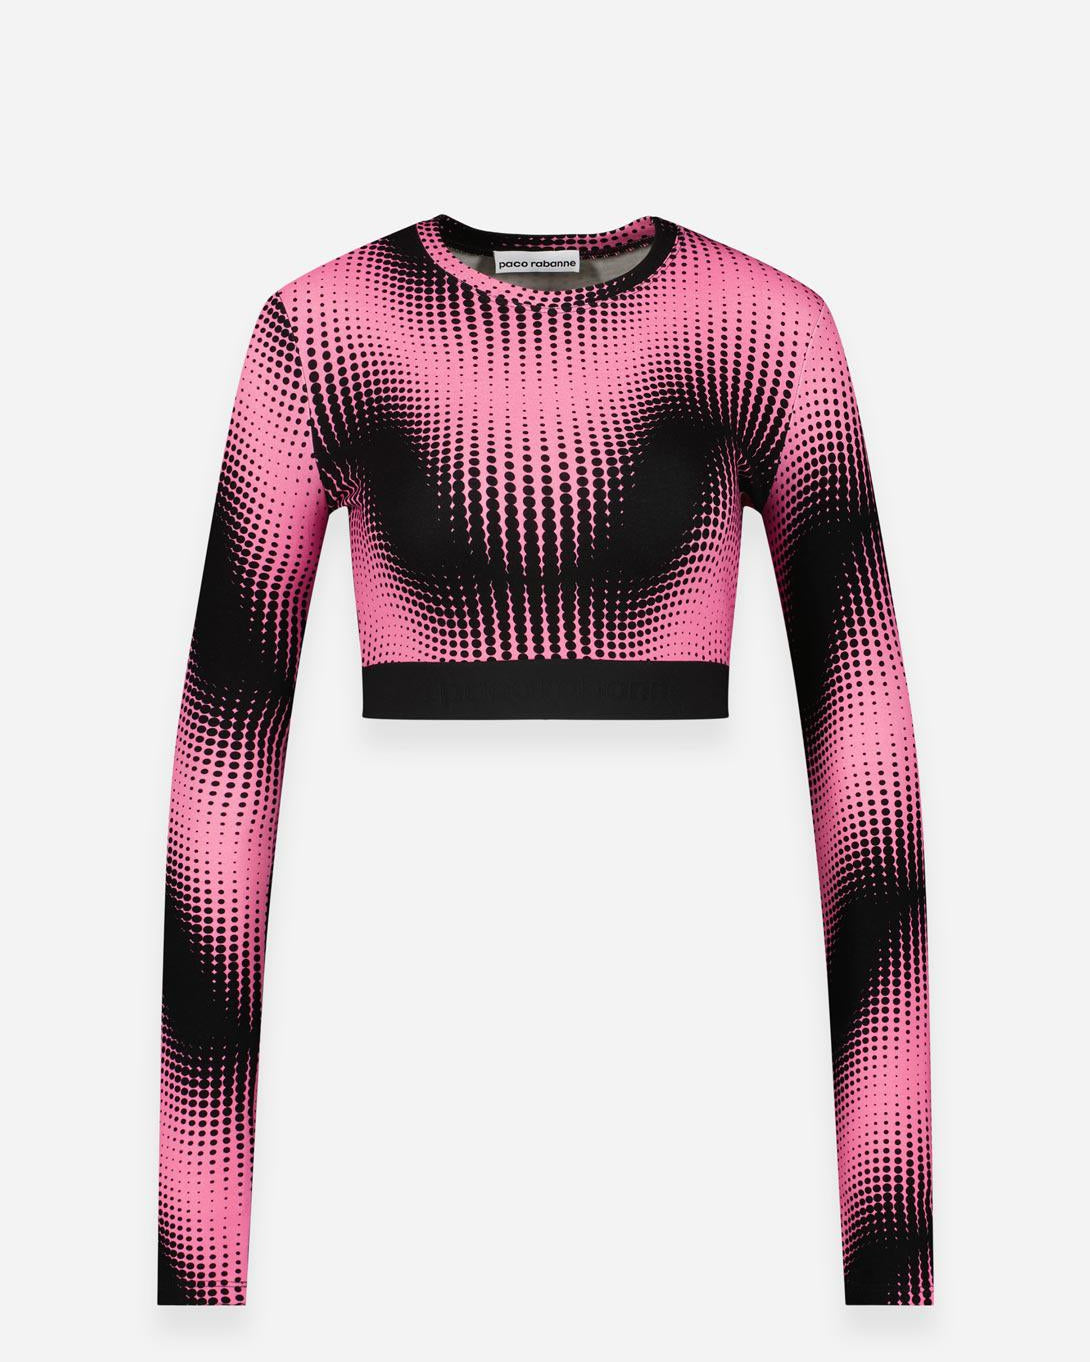 Pink echo longsleeves top - Activewear - Paco Rabanne - Elevastor